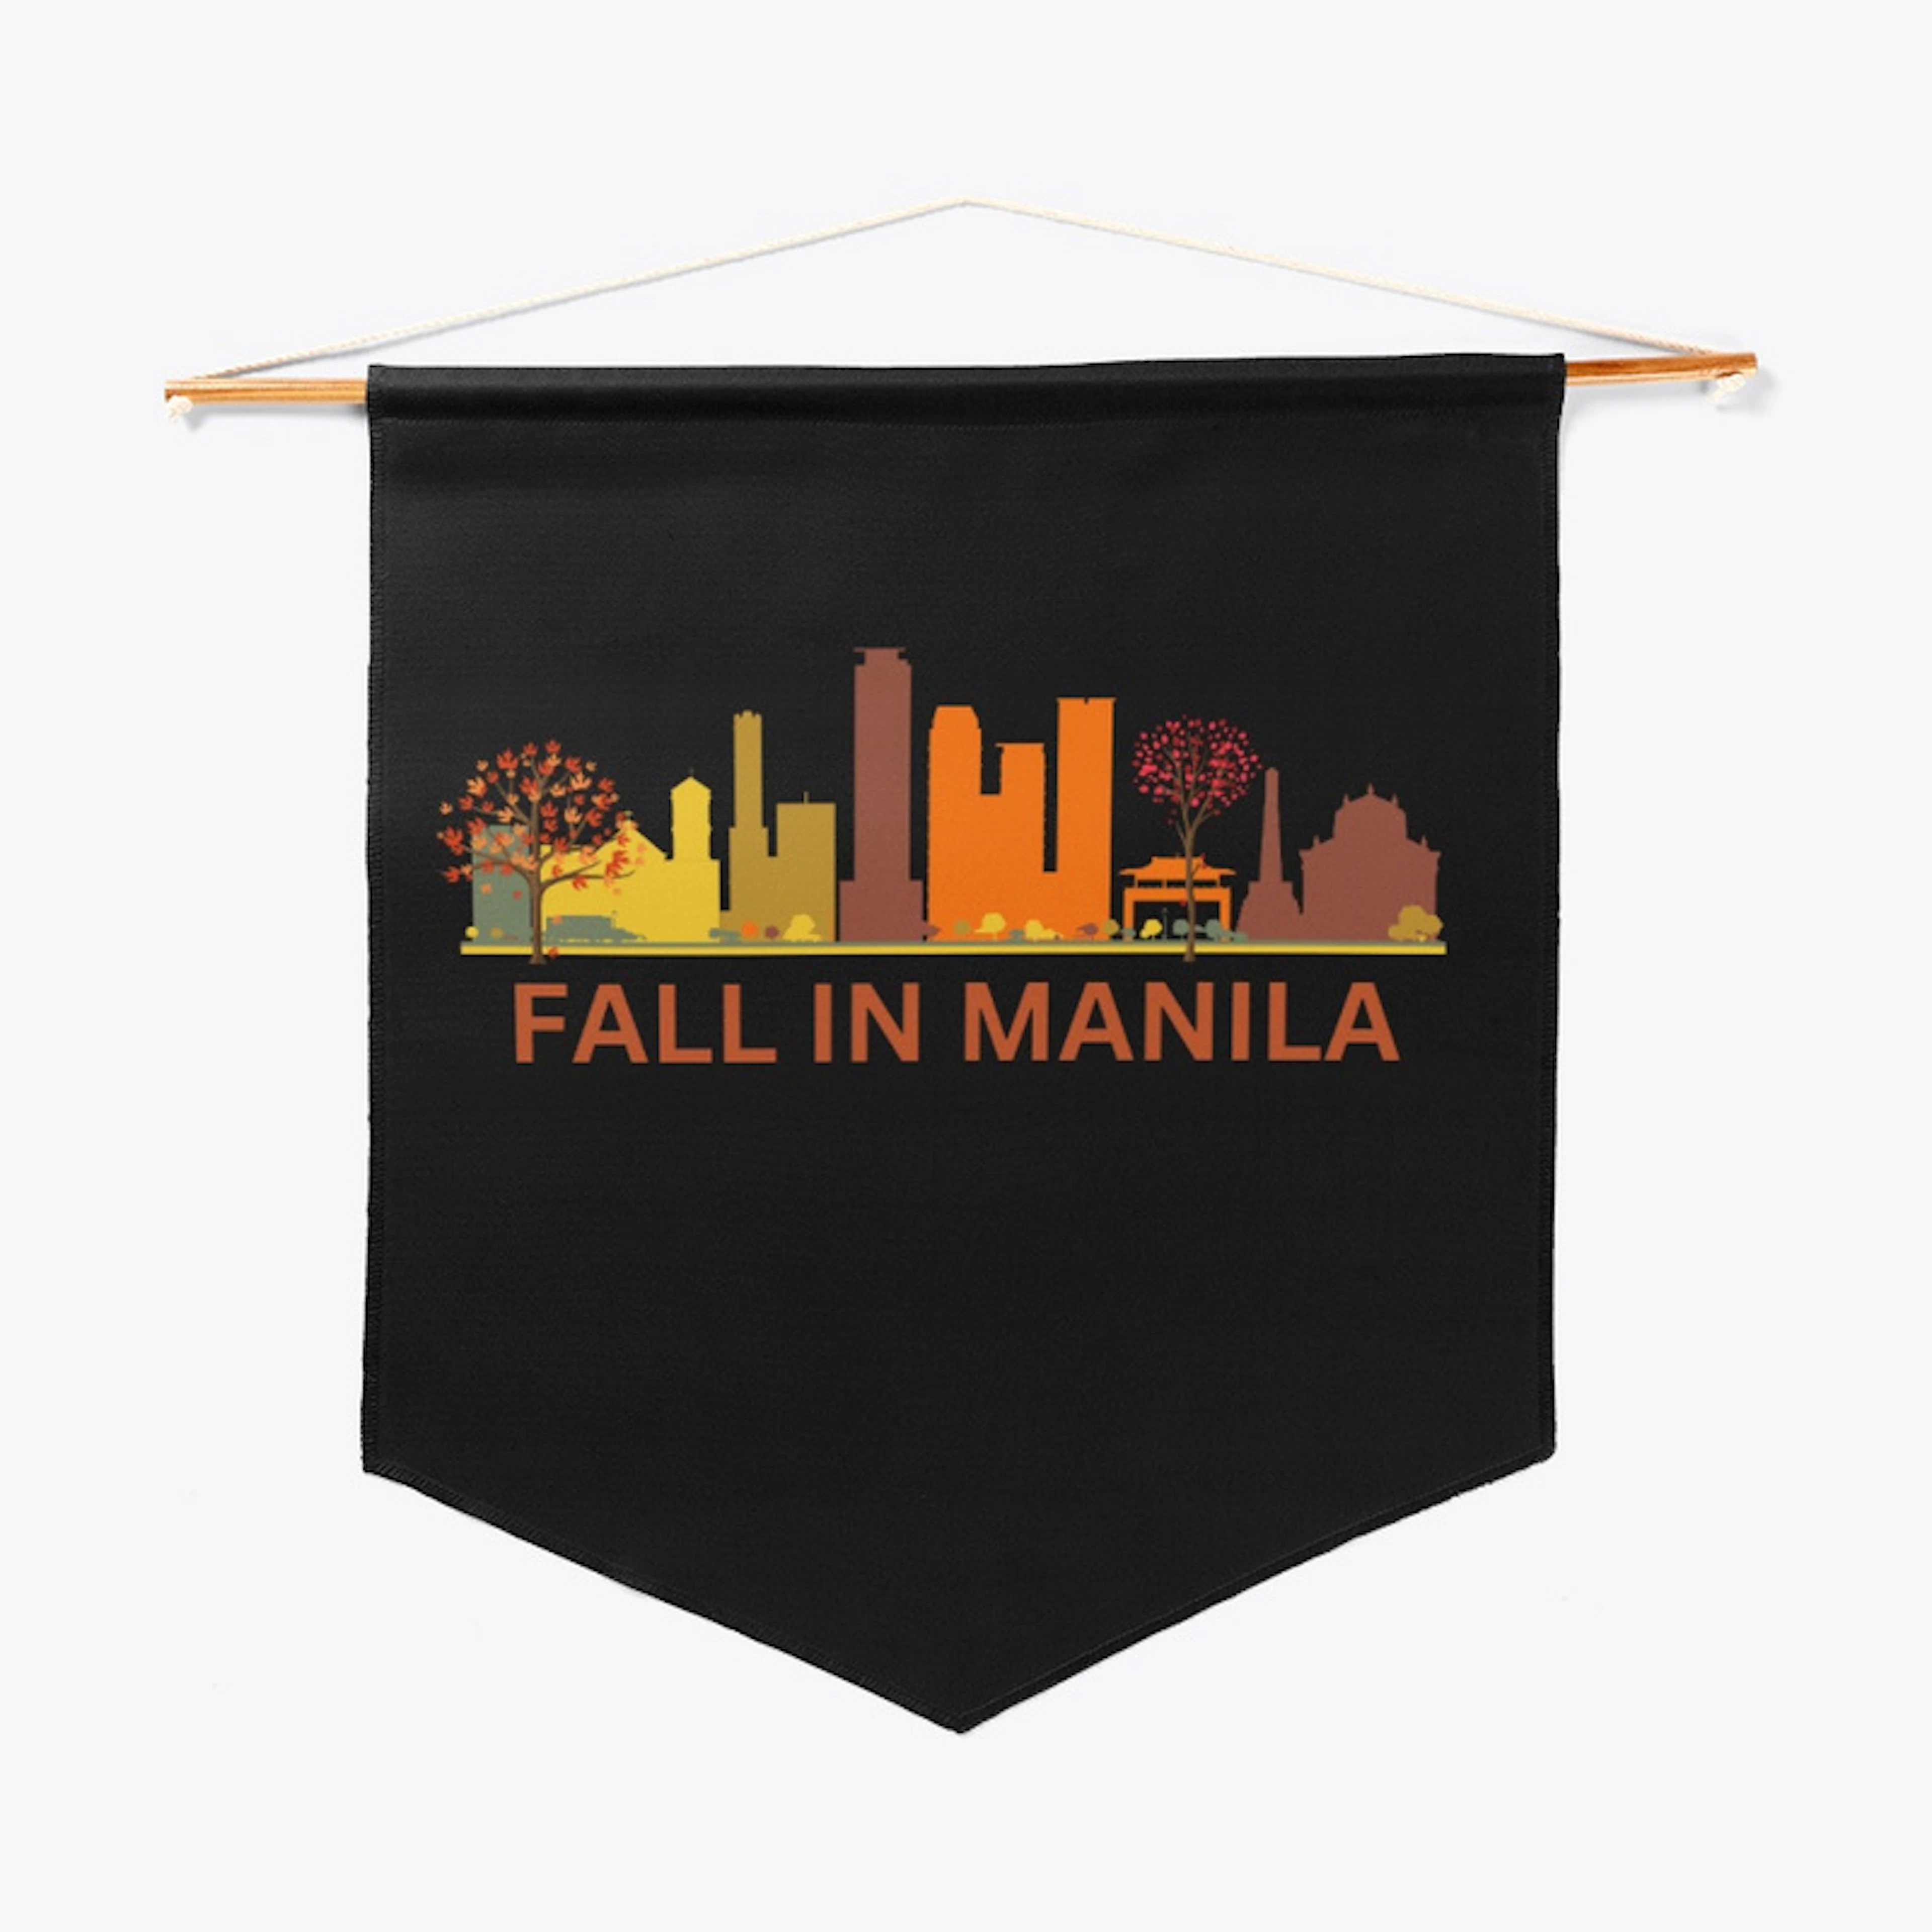 Fall in Manila